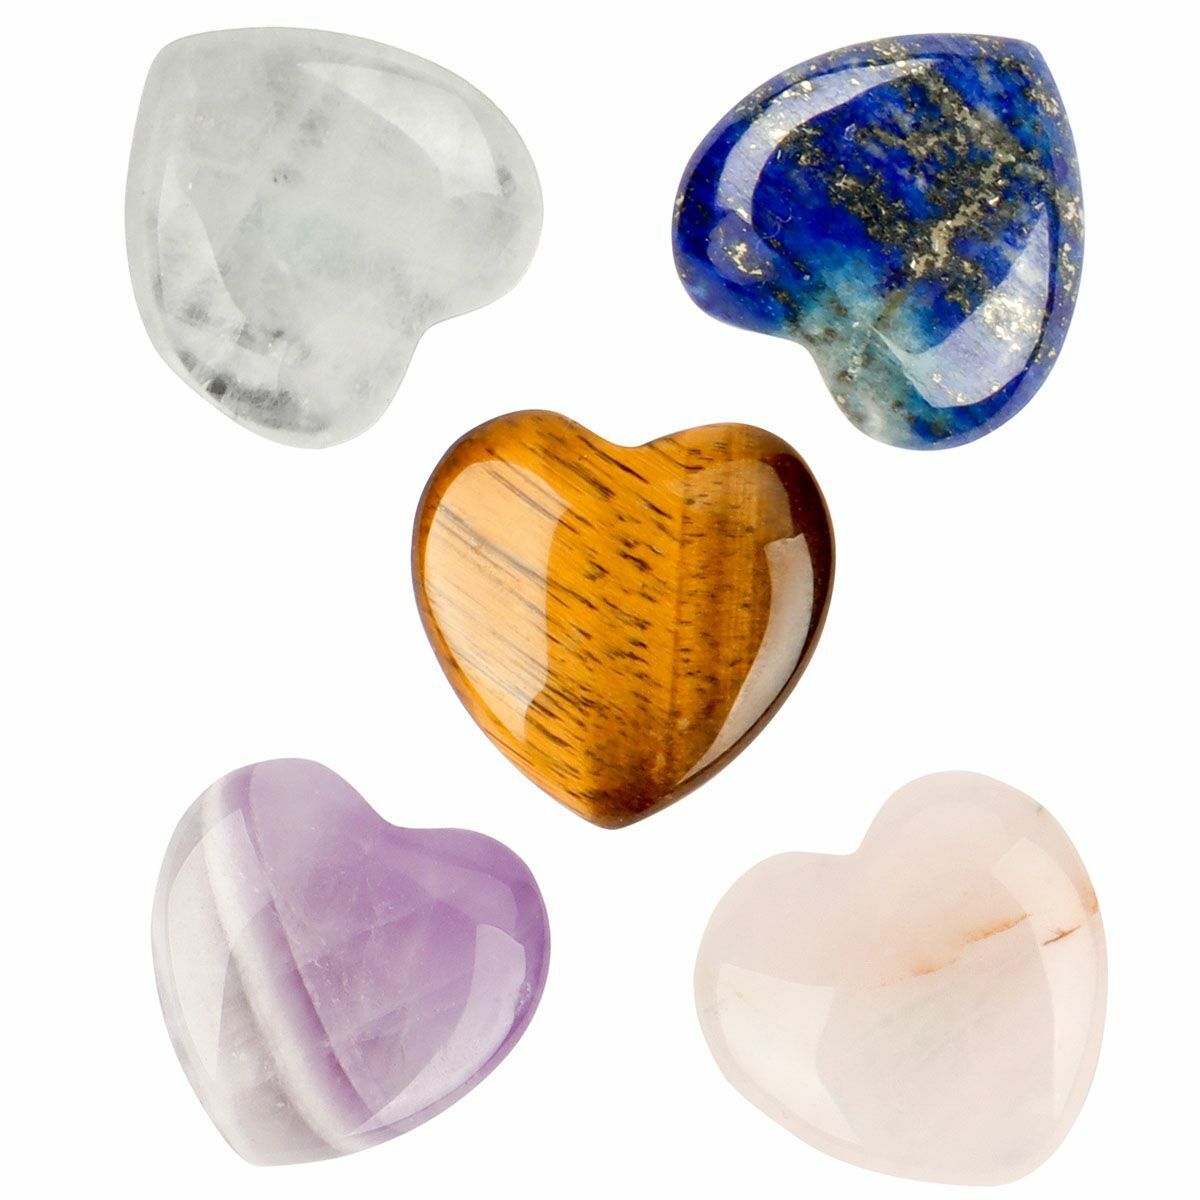 5pcs Natural love heart quartz crystal pendant carved gem mineral reiki healing